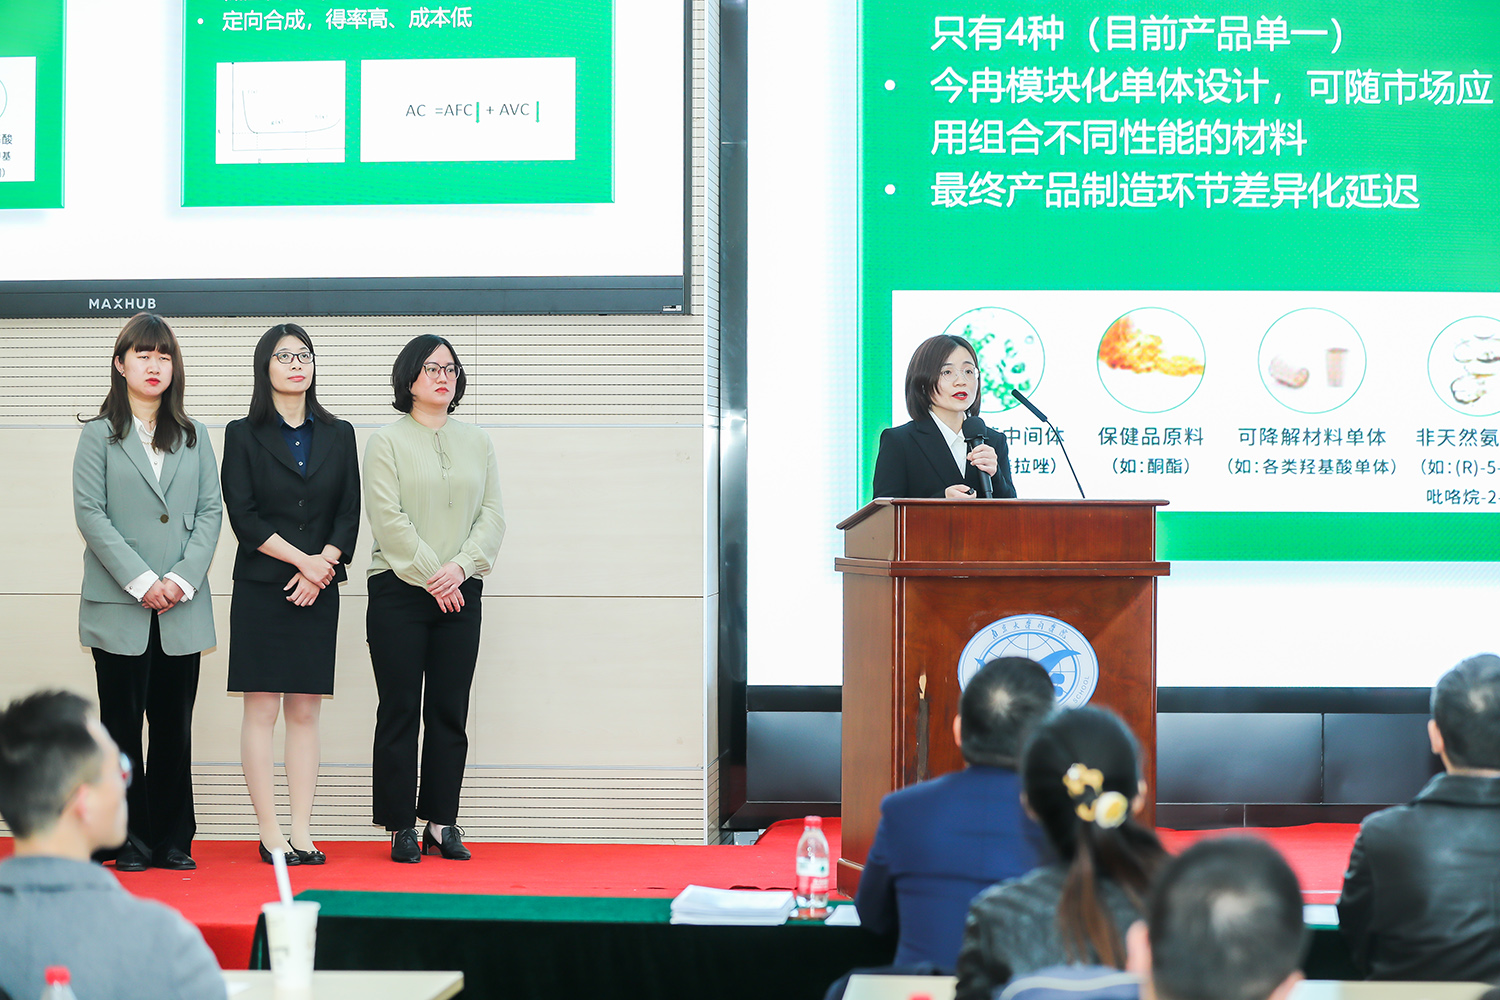 Giải nhất!Công nghệ sinh học Jinran đã giành chức vô địch trong Cuộc thi Doanh nhân MBA NTU 2023